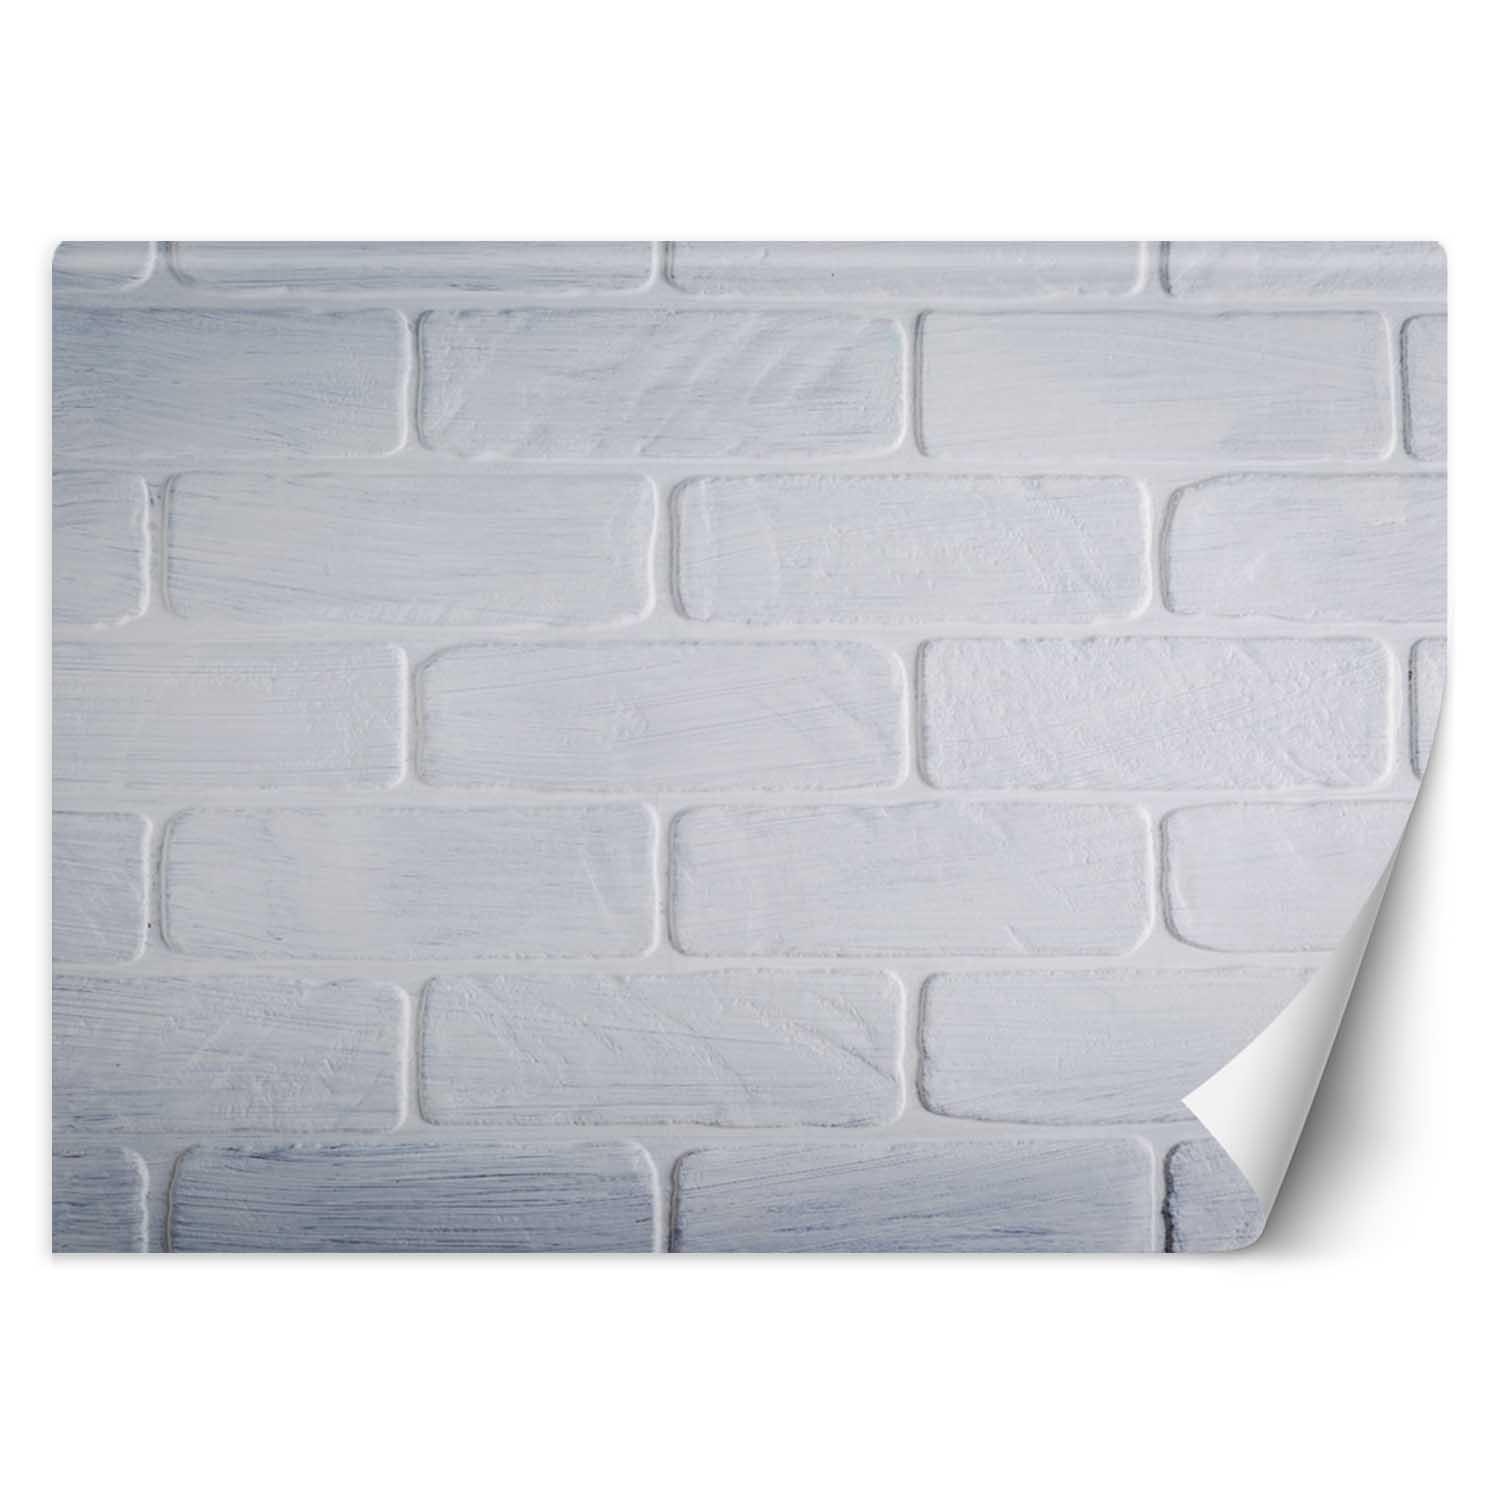 Trend24 – Behang – Witte Bakstenen Muur – Vliesbehang – Behang Woonkamer – Fotobehang – 100×70 cm – Incl. behanglijm